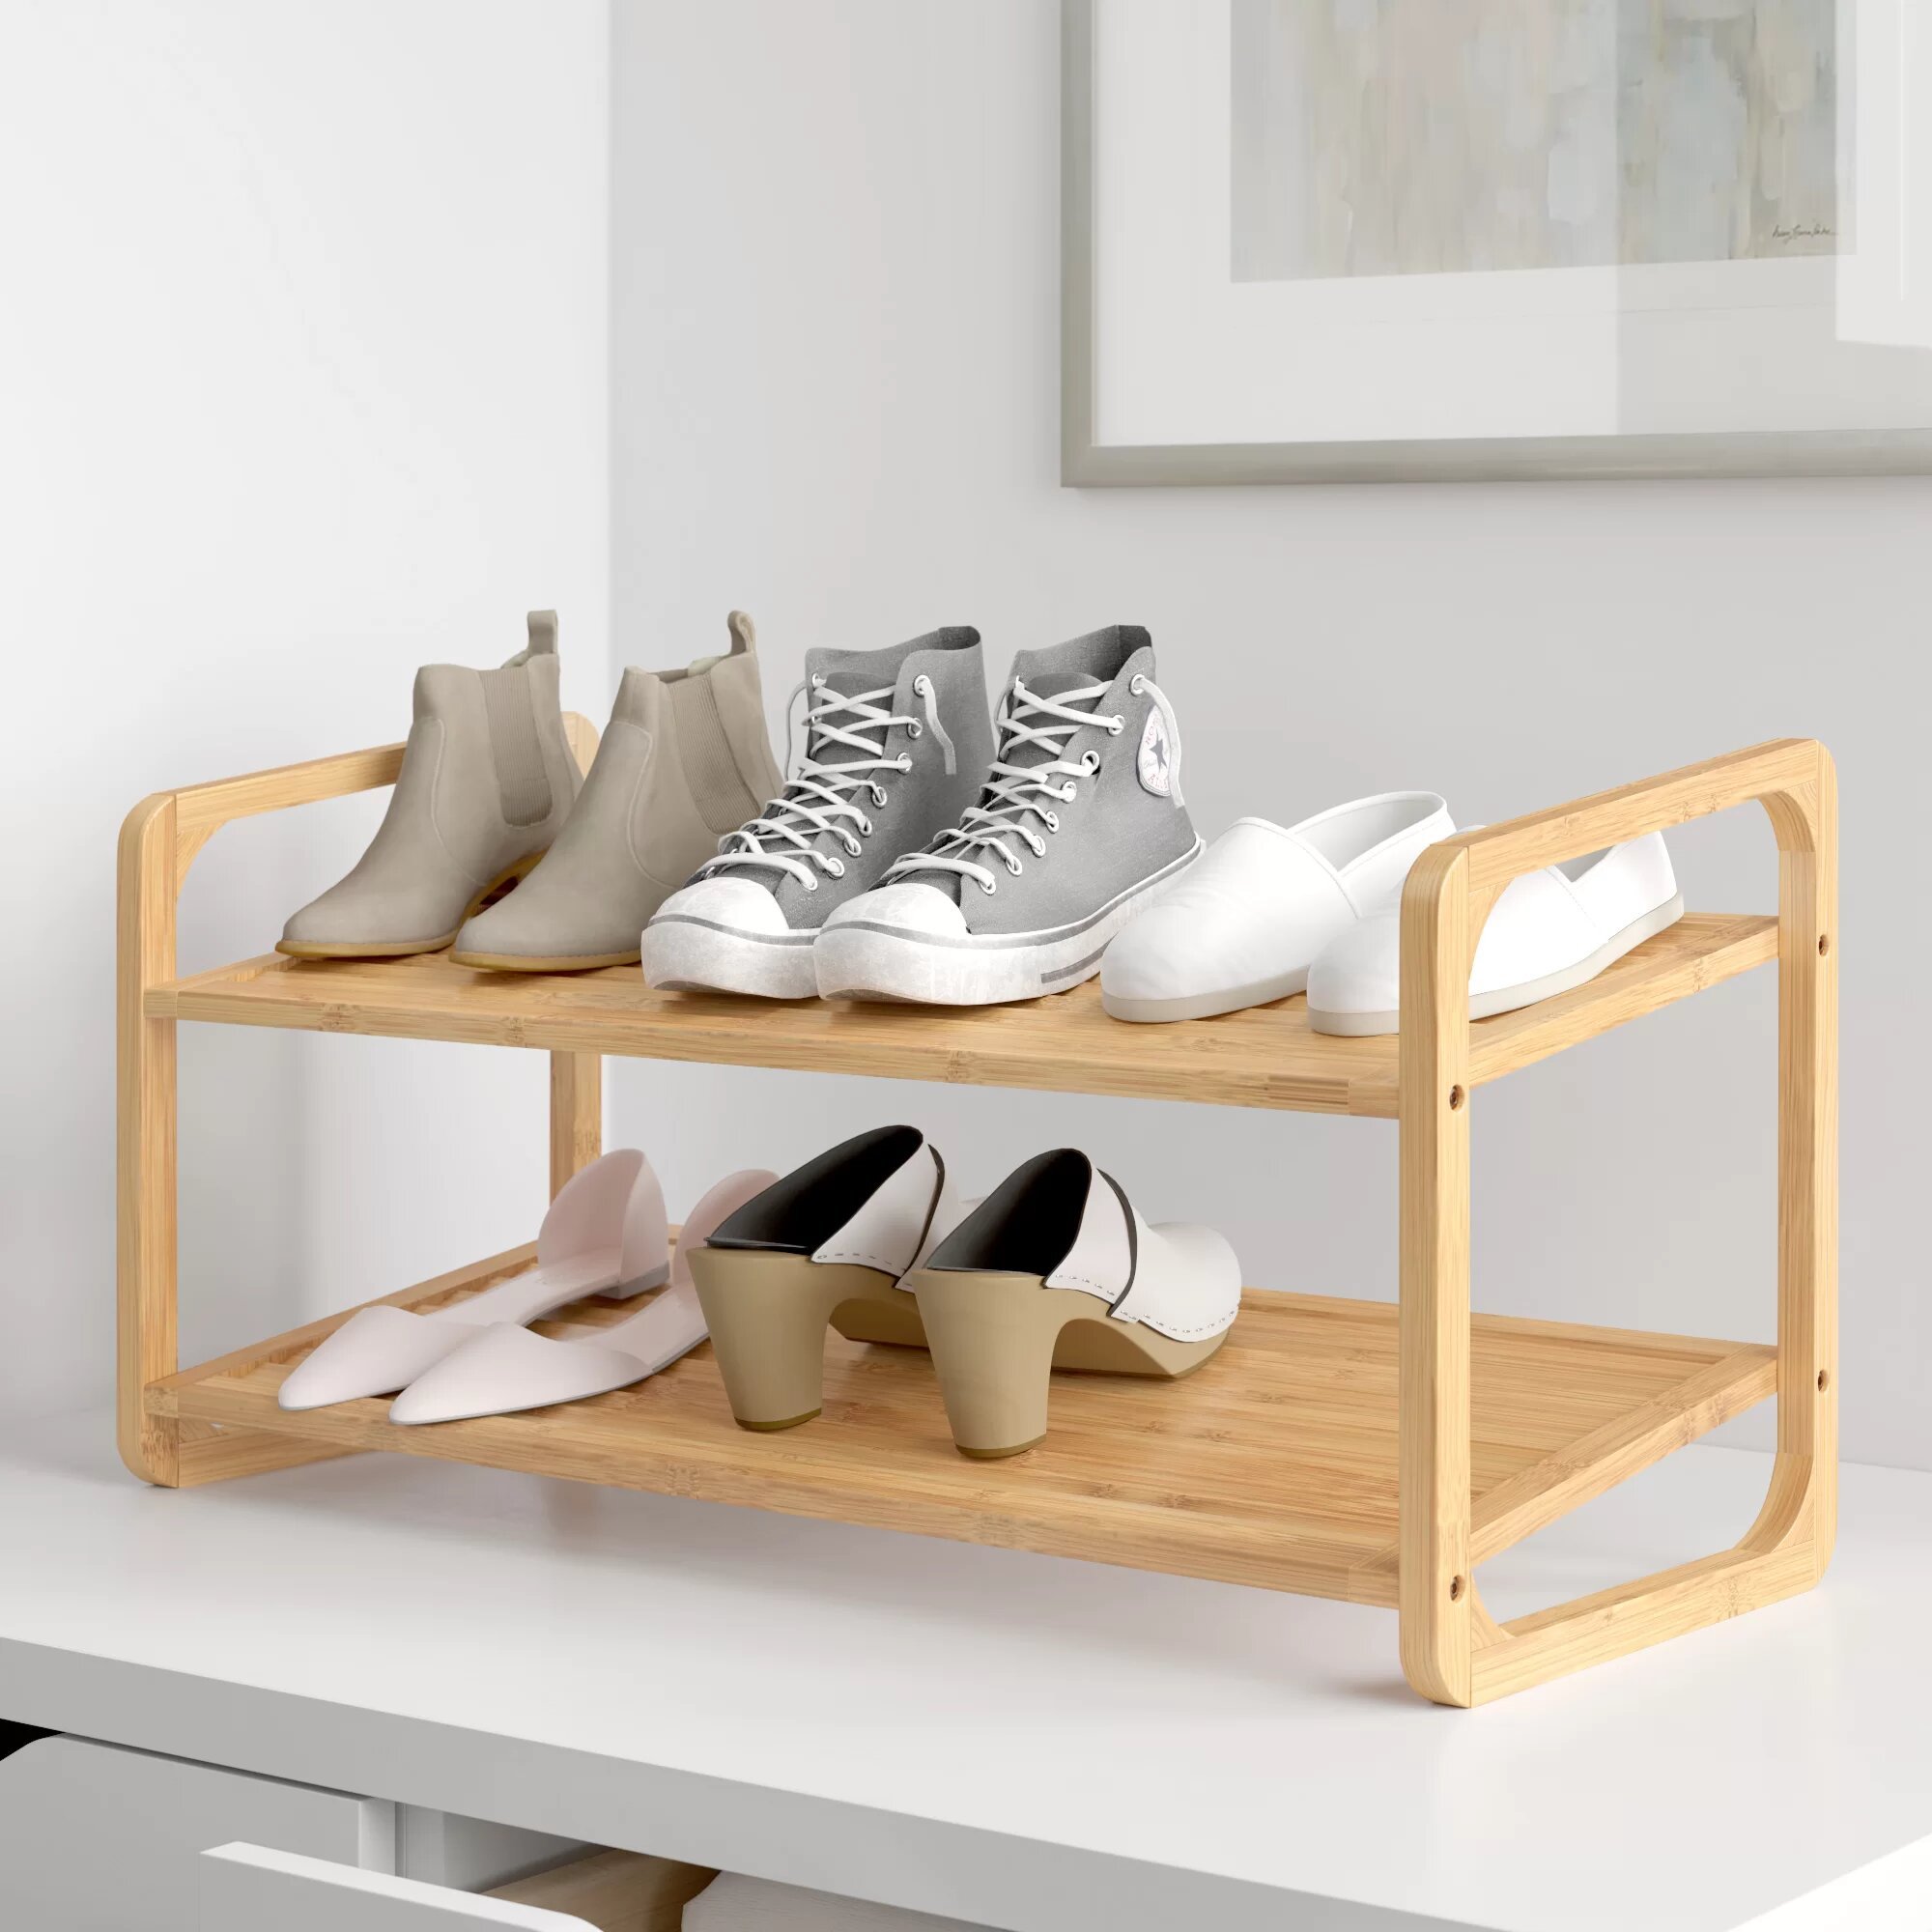 Zapateros decorativos: ideas para mantener tus zapatos en orden - Foto 1